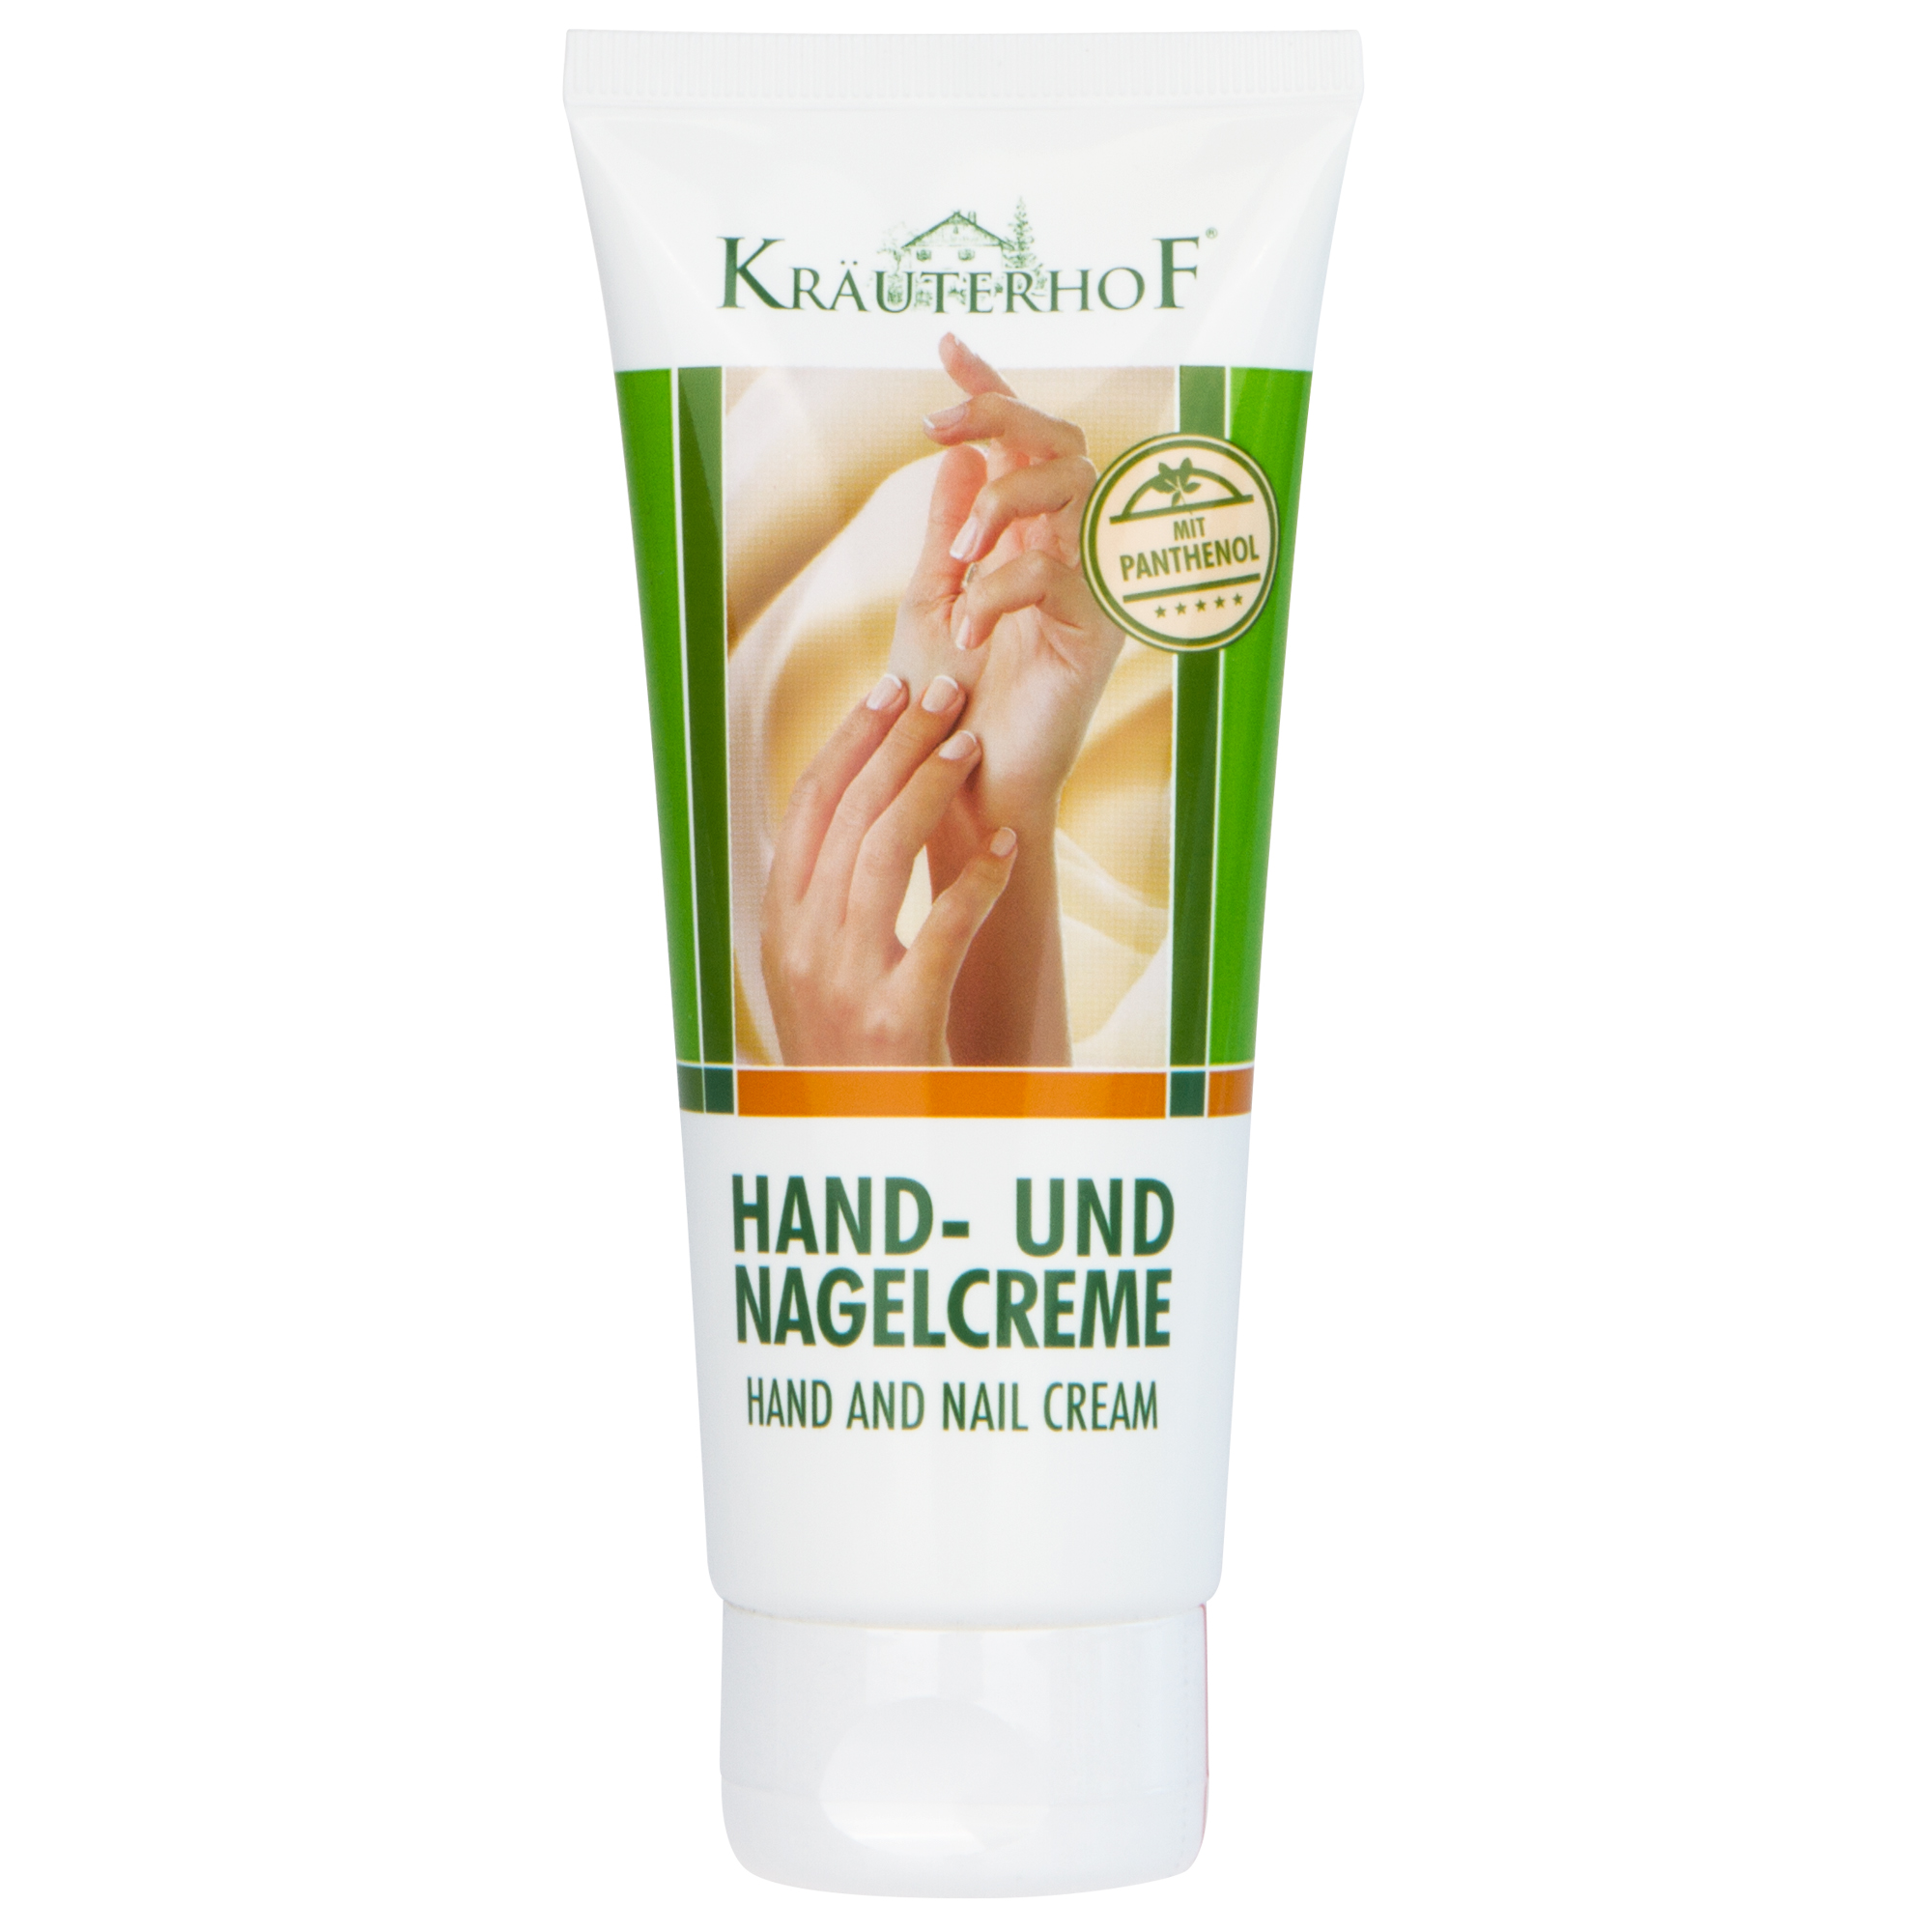 Kräuterhof® Hand- und Nagelcreme mit Panthenol 100 ml